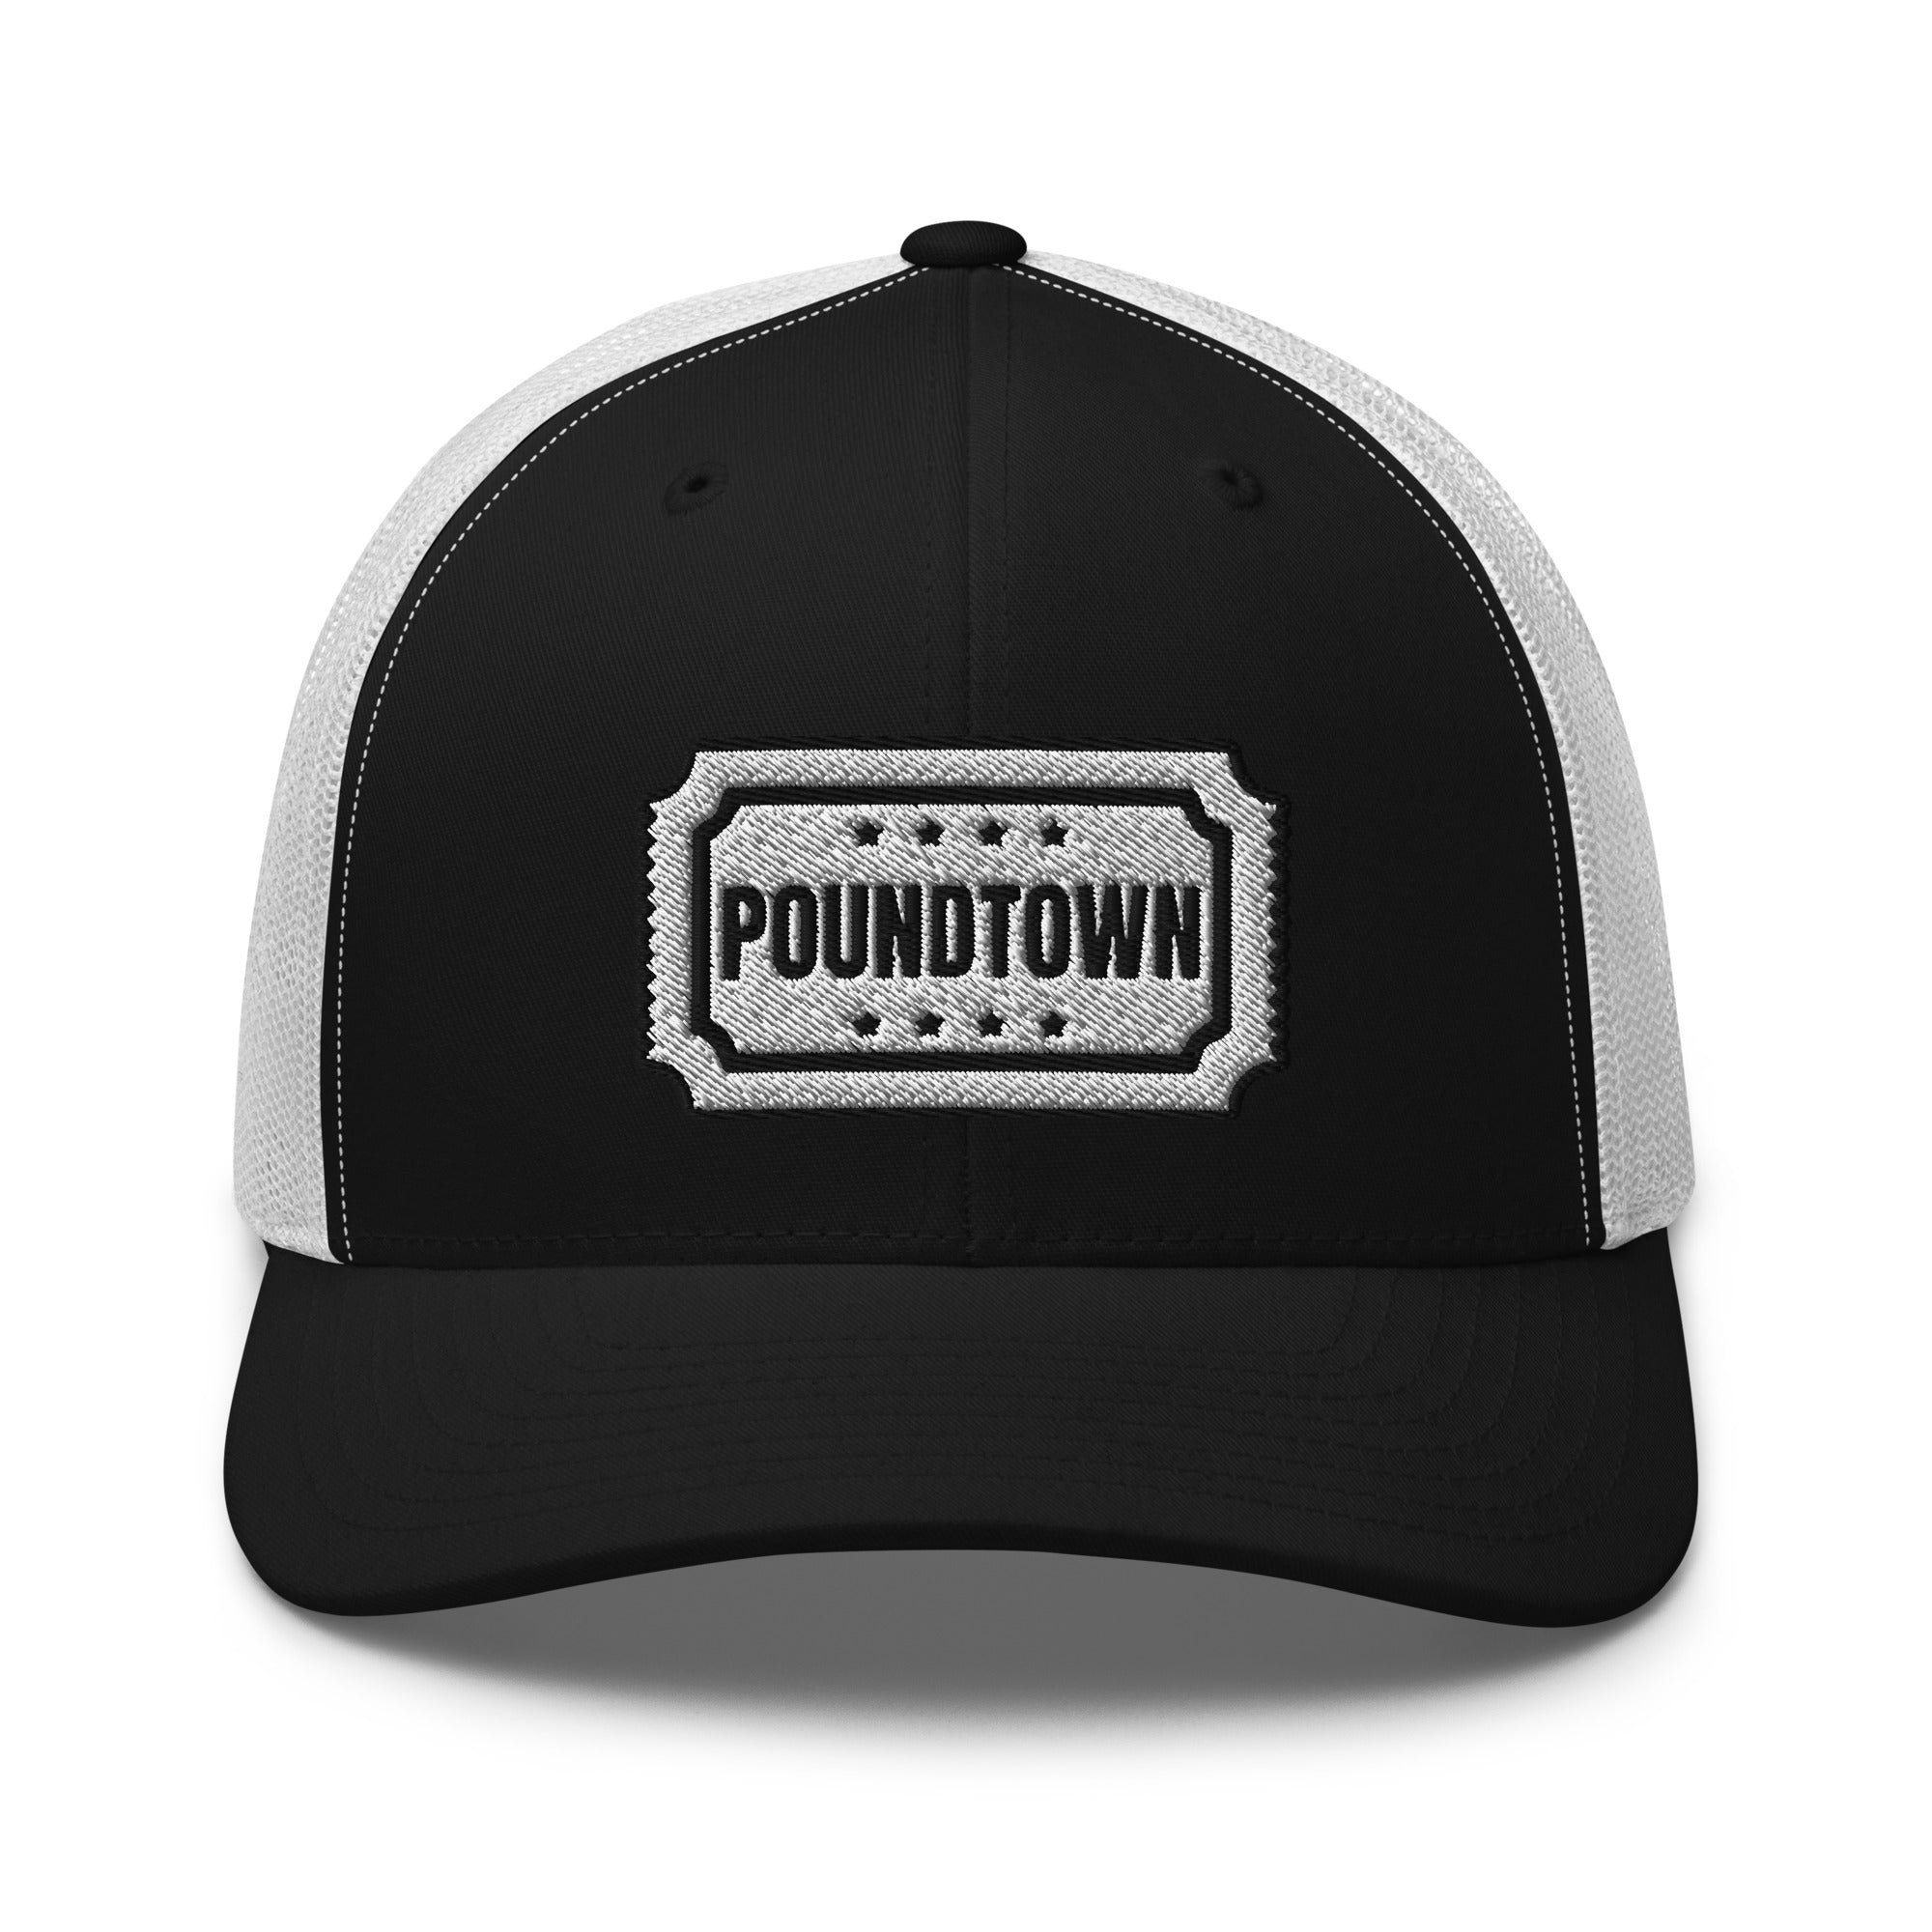 Pound Town Ticket Trucker Hat